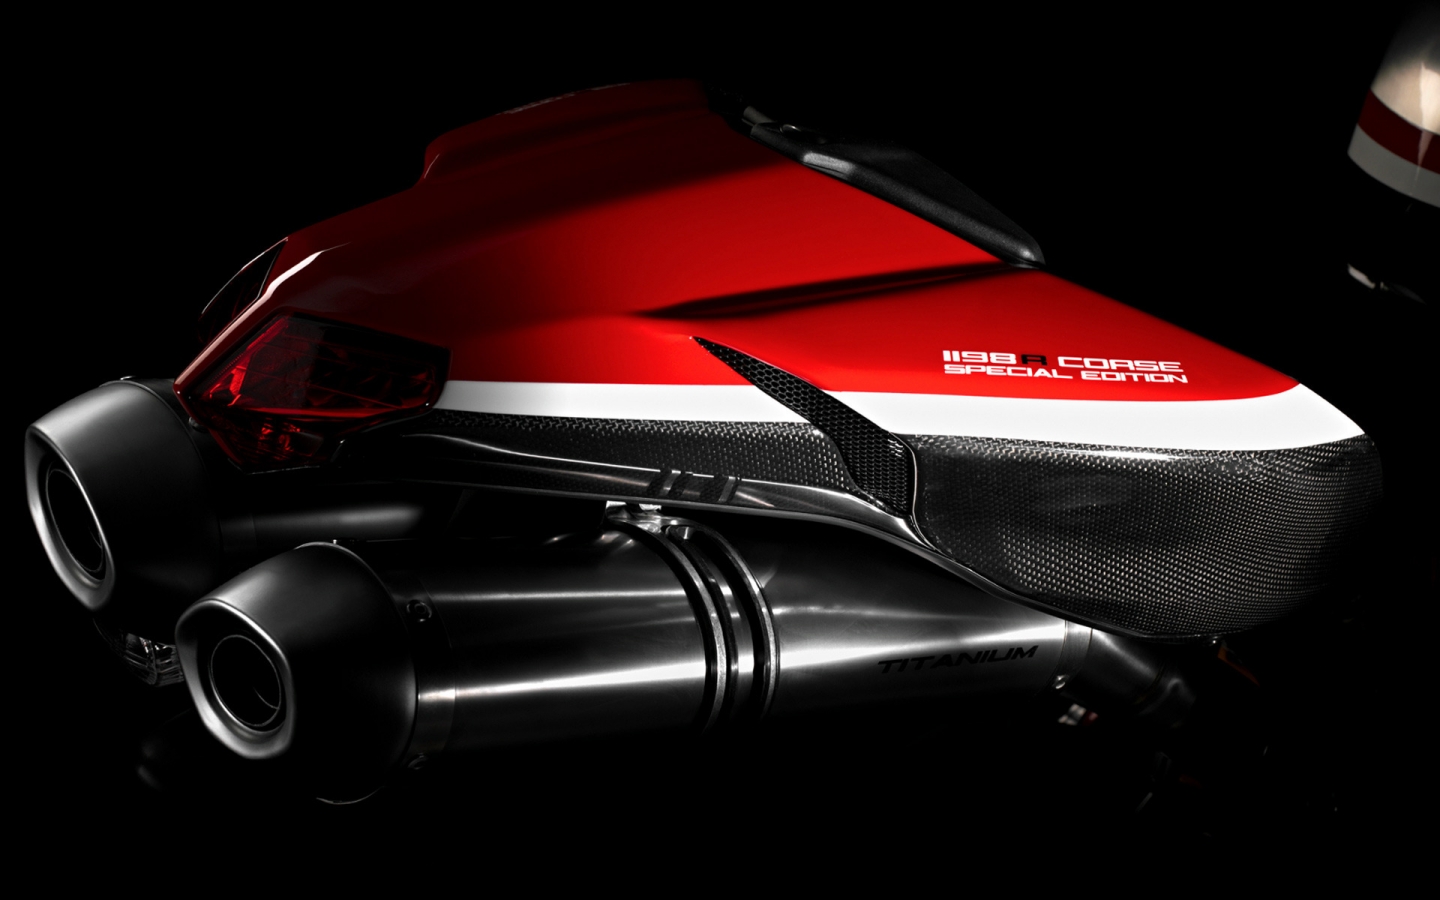 Ducati Superbike-1198-R-Corse Rear for 1440 x 900 widescreen resolution